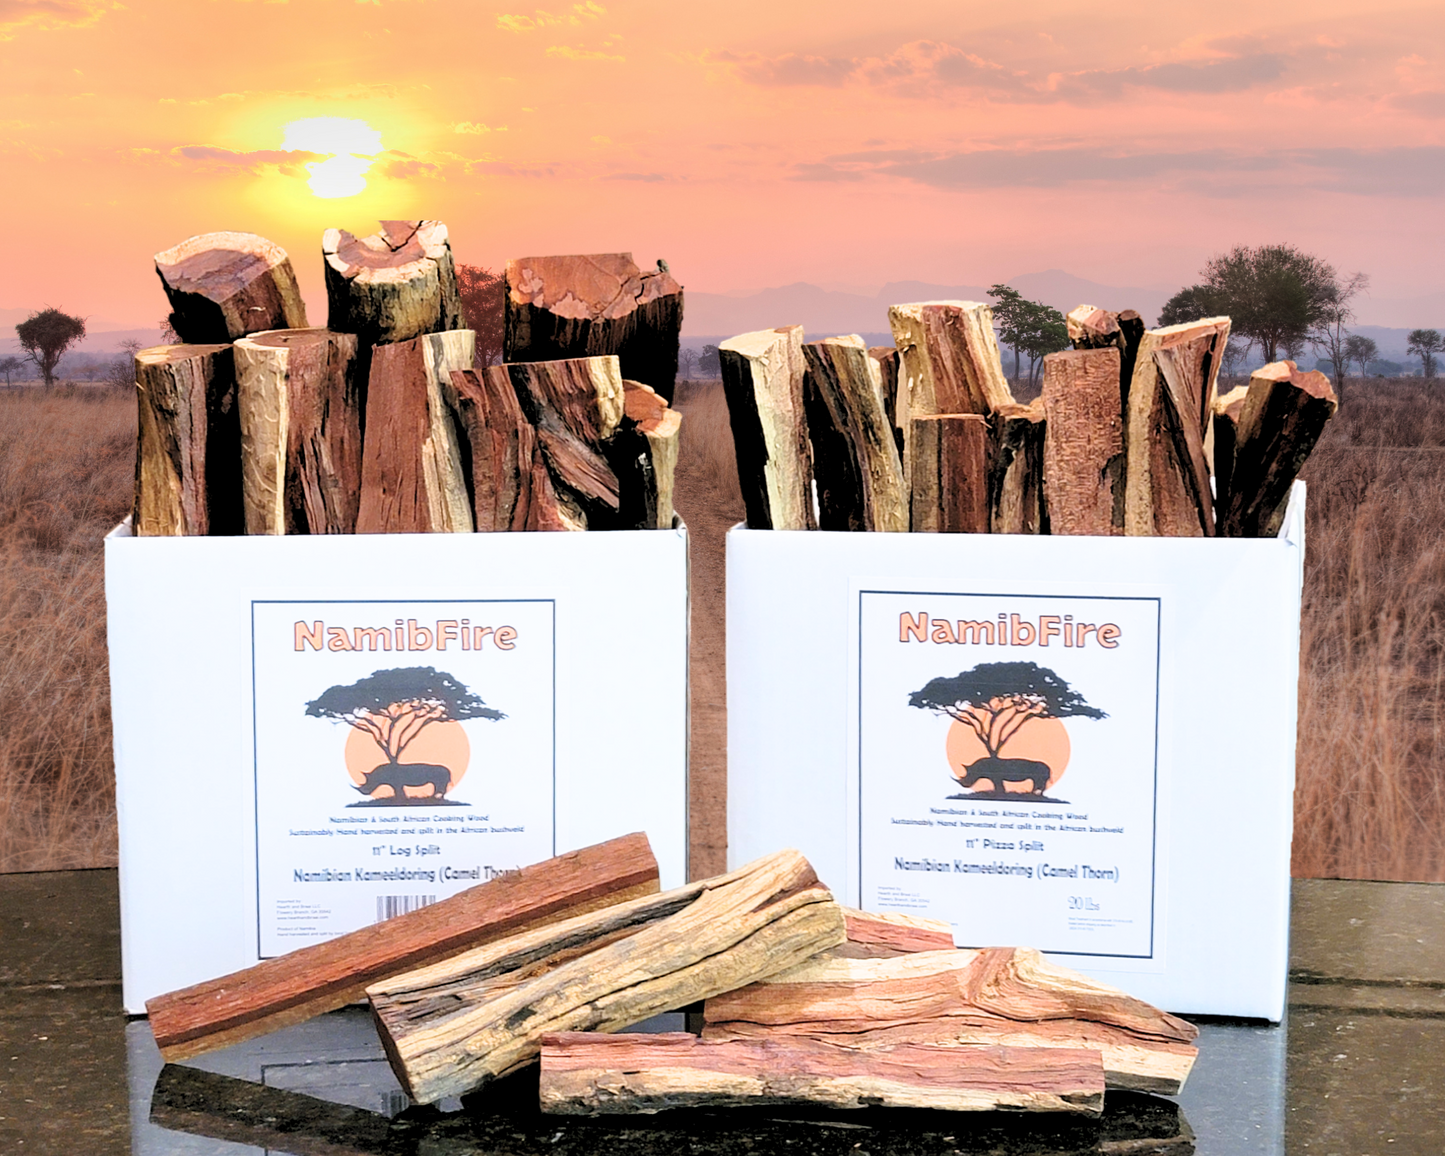 11" Kameeldoring Gourmet Cooking Wood splits (braai hout)